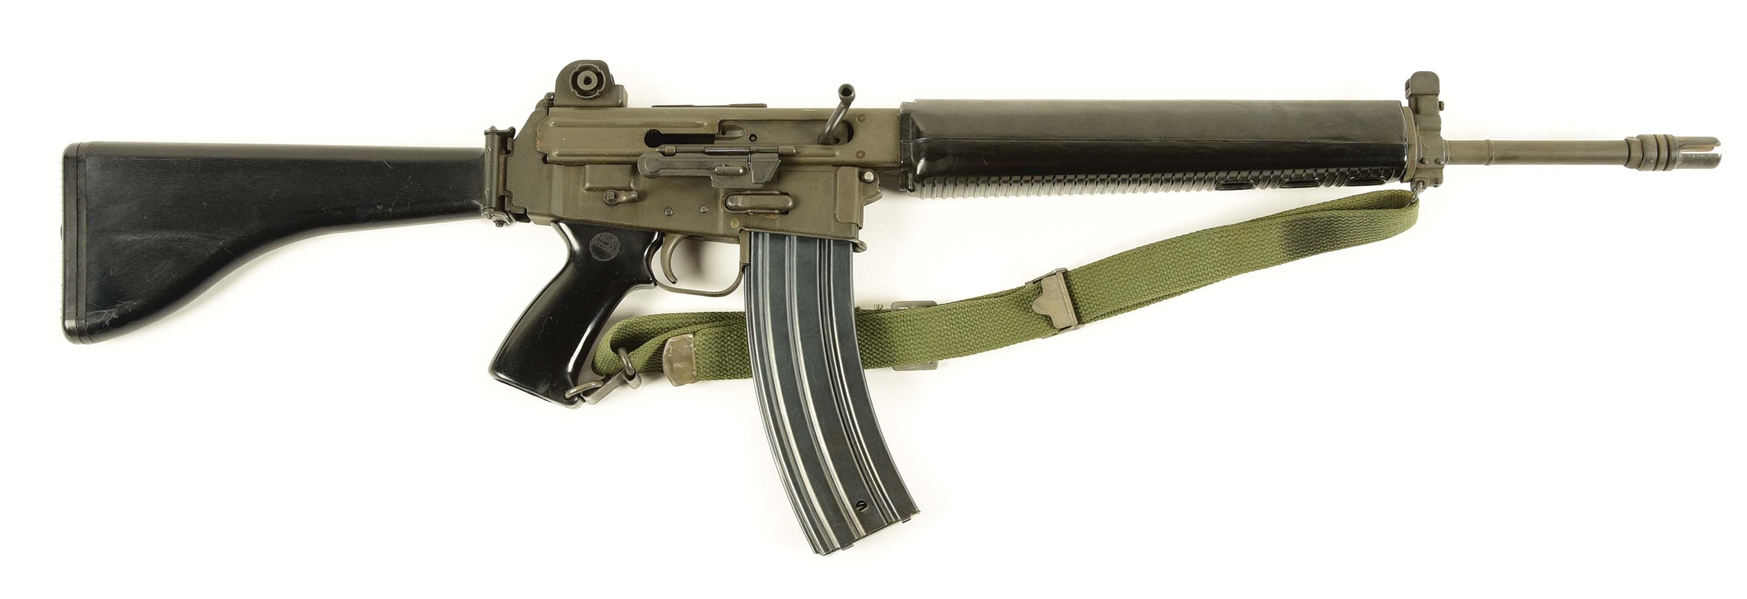 (N) FINE ARMALITE AR-18 MACHINE GUN AS MANUFACTURED IN COSTA MESA, CA (FULLY TRANSFERABLE).